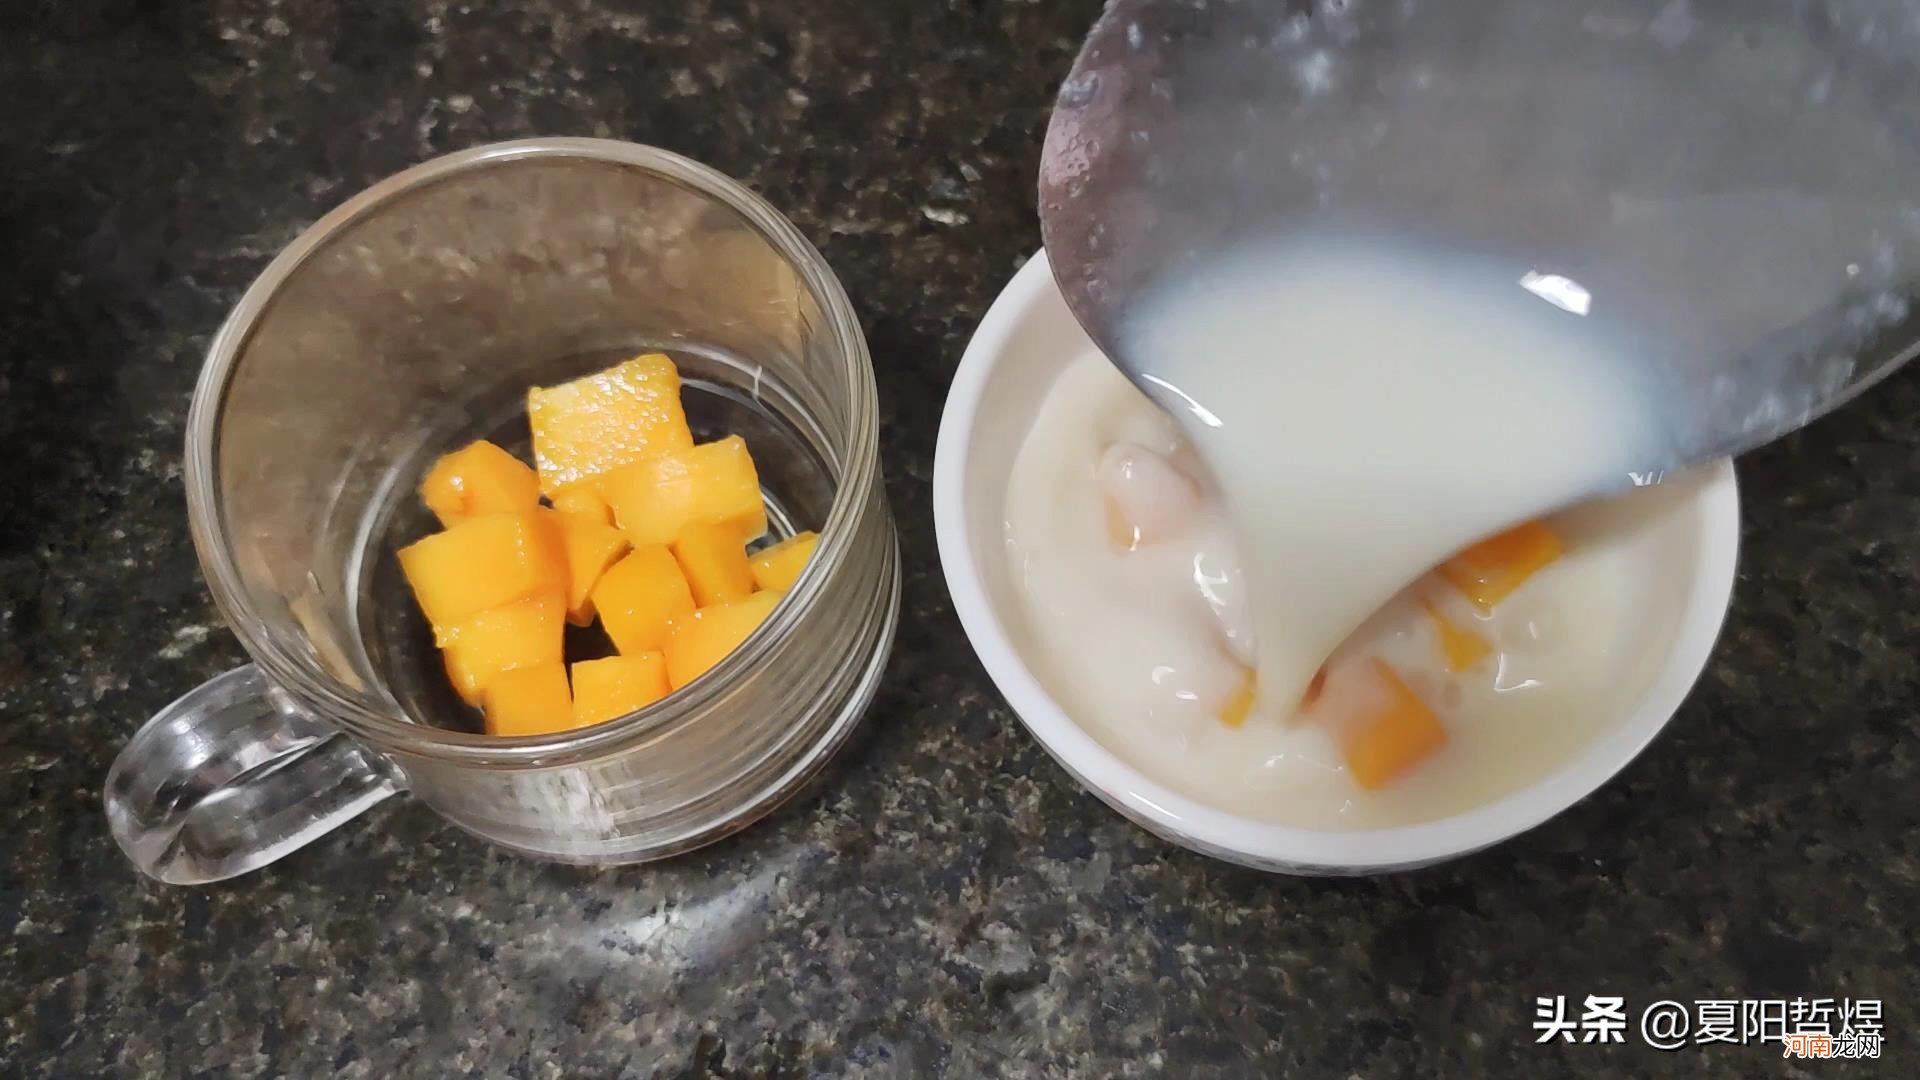 芒果牛奶布丁 牛奶芒果布丁可以在家做